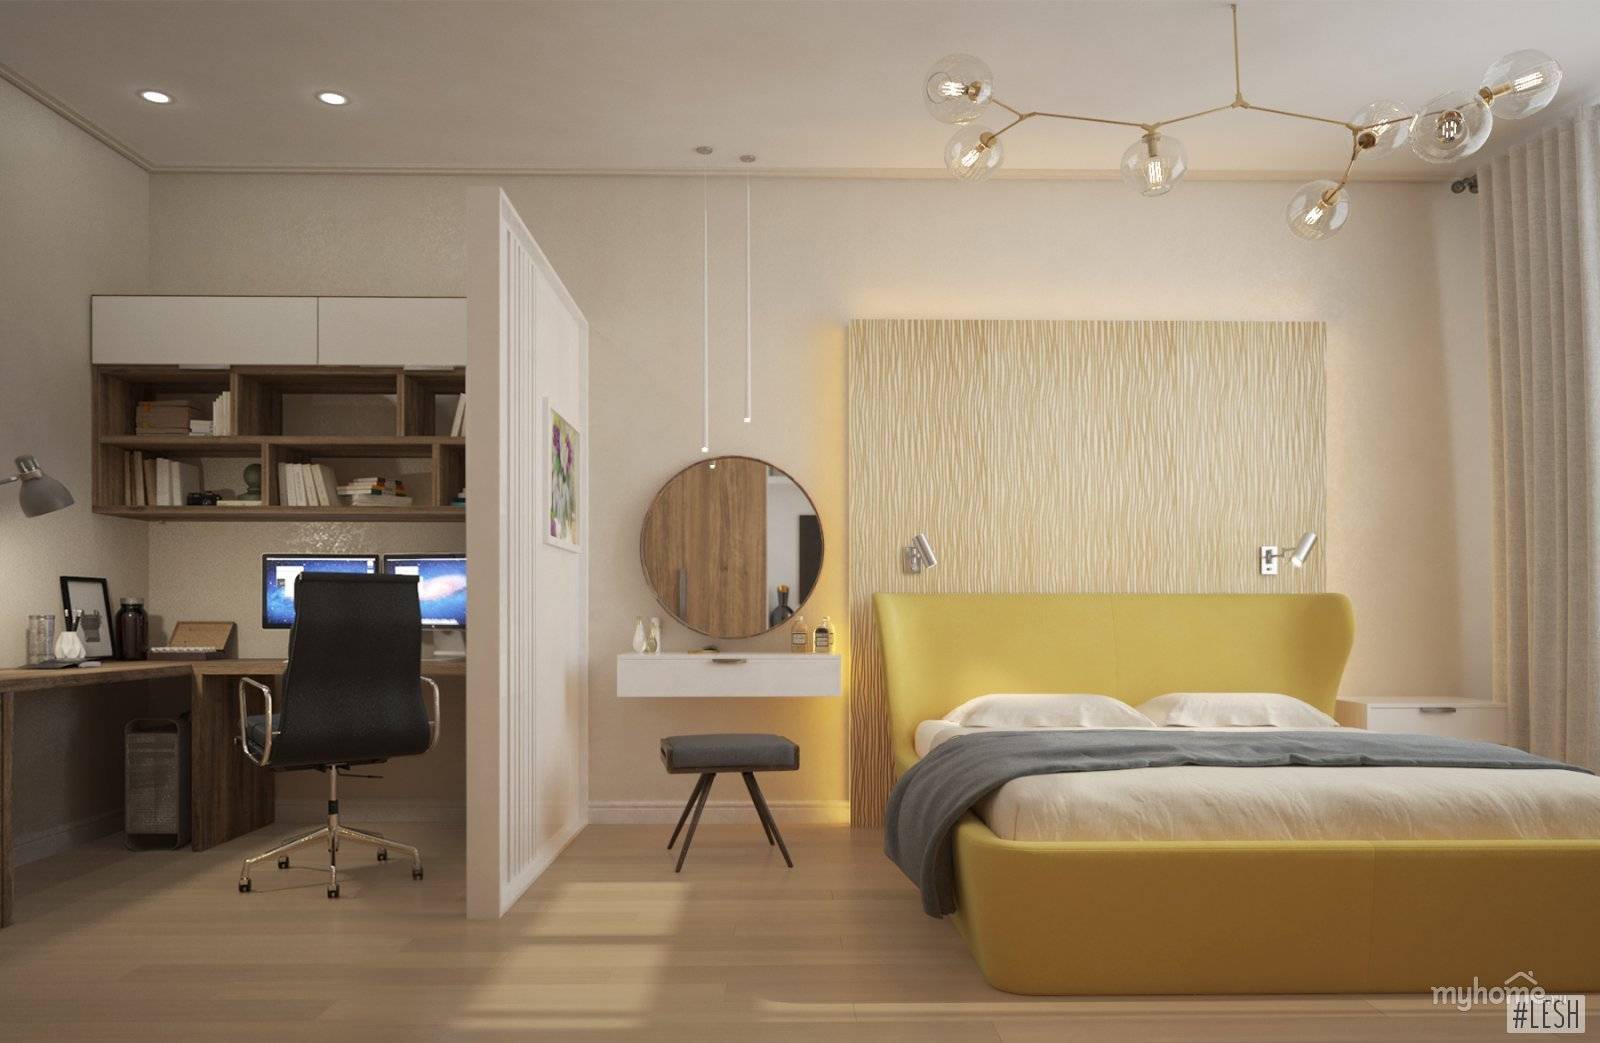 Комната 18 кв м: зонирование на спальню и гостиную